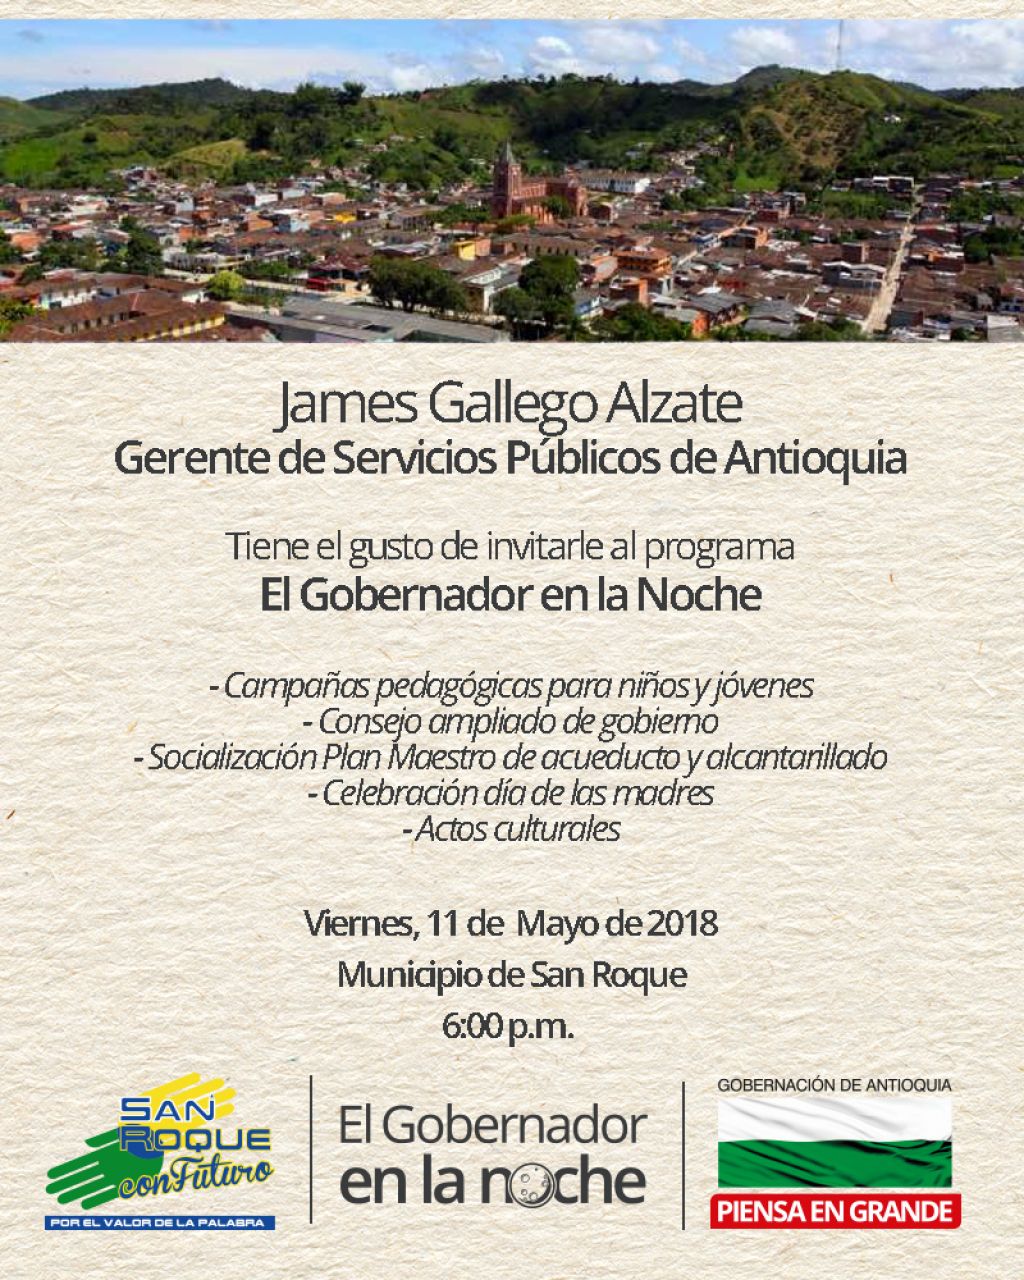 Gerente de Servicios Públicos de Antioquia invita al Gobernador en la noche